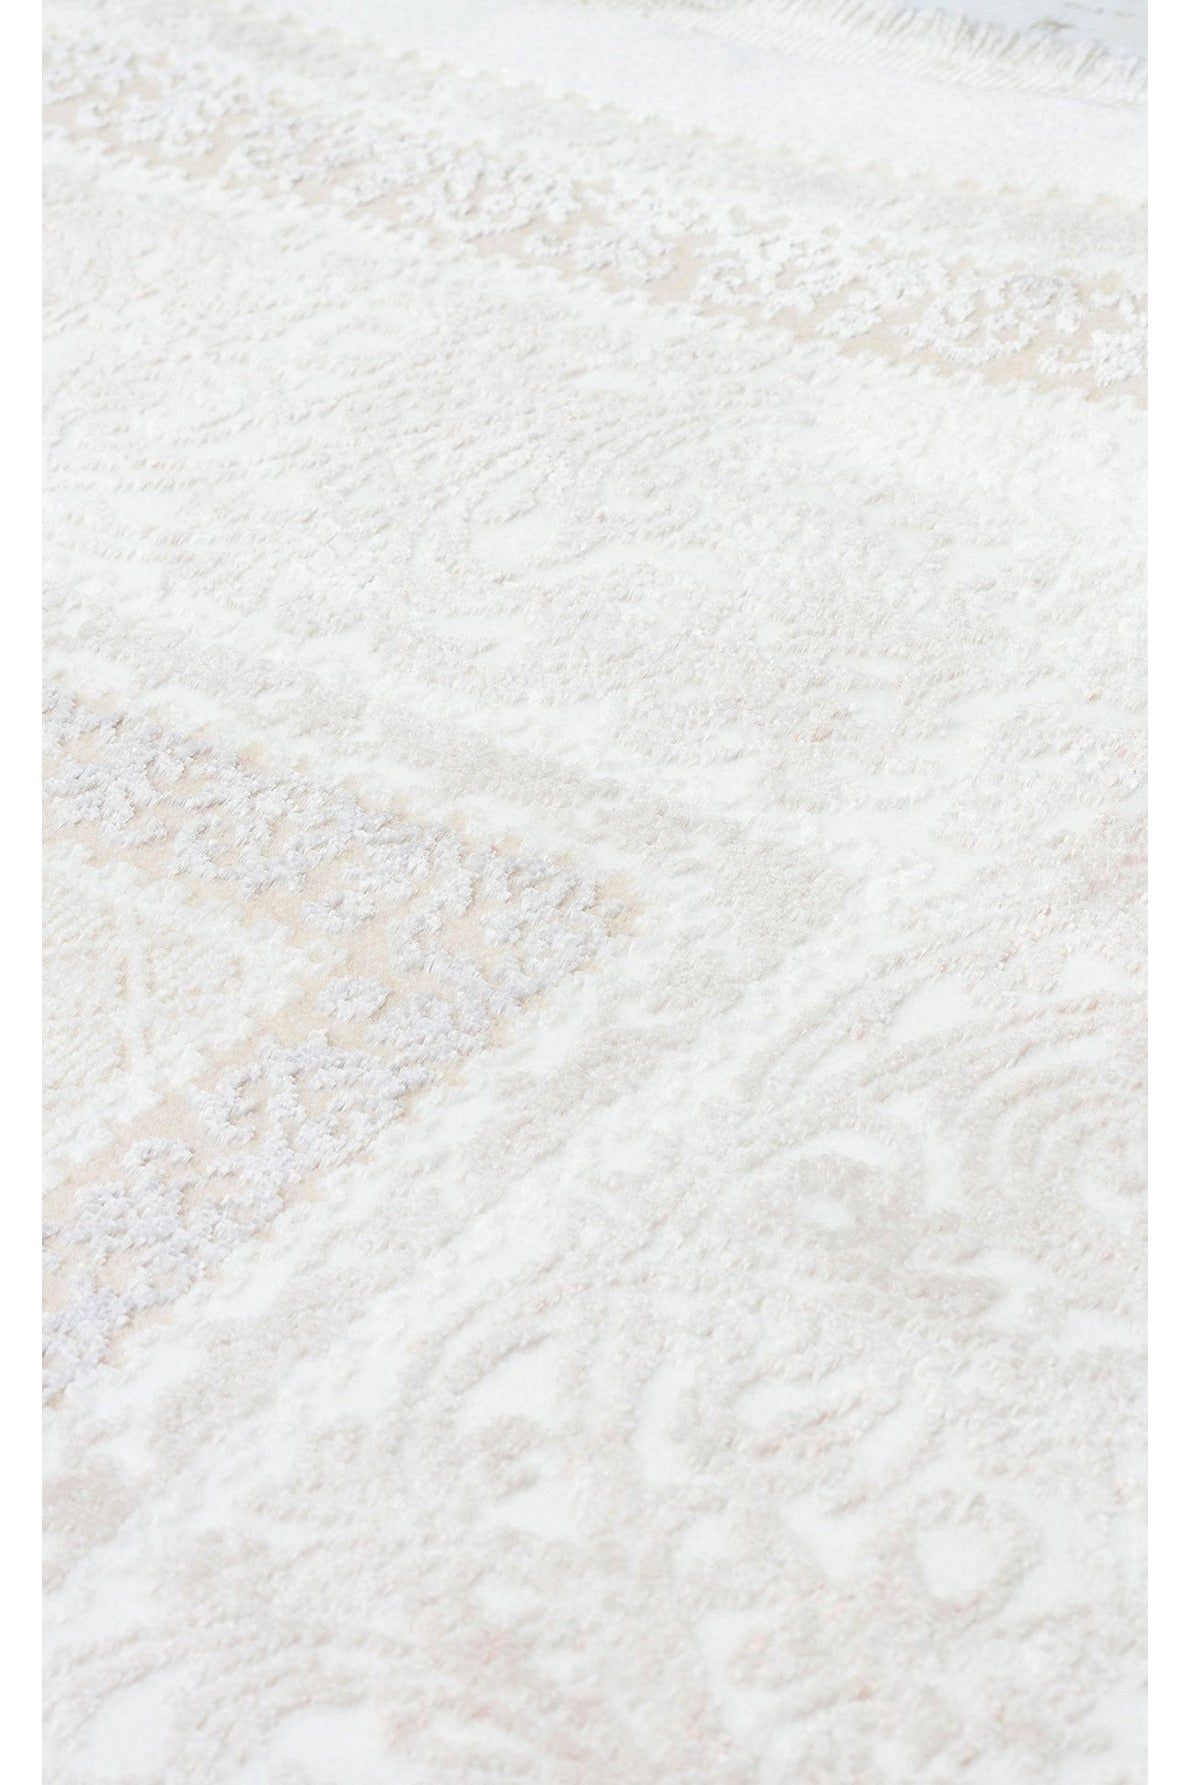 #Turkish_Carpets_Rugs# #Modern_Carpets# #Abrash_Carpets#Blv 02 Beige